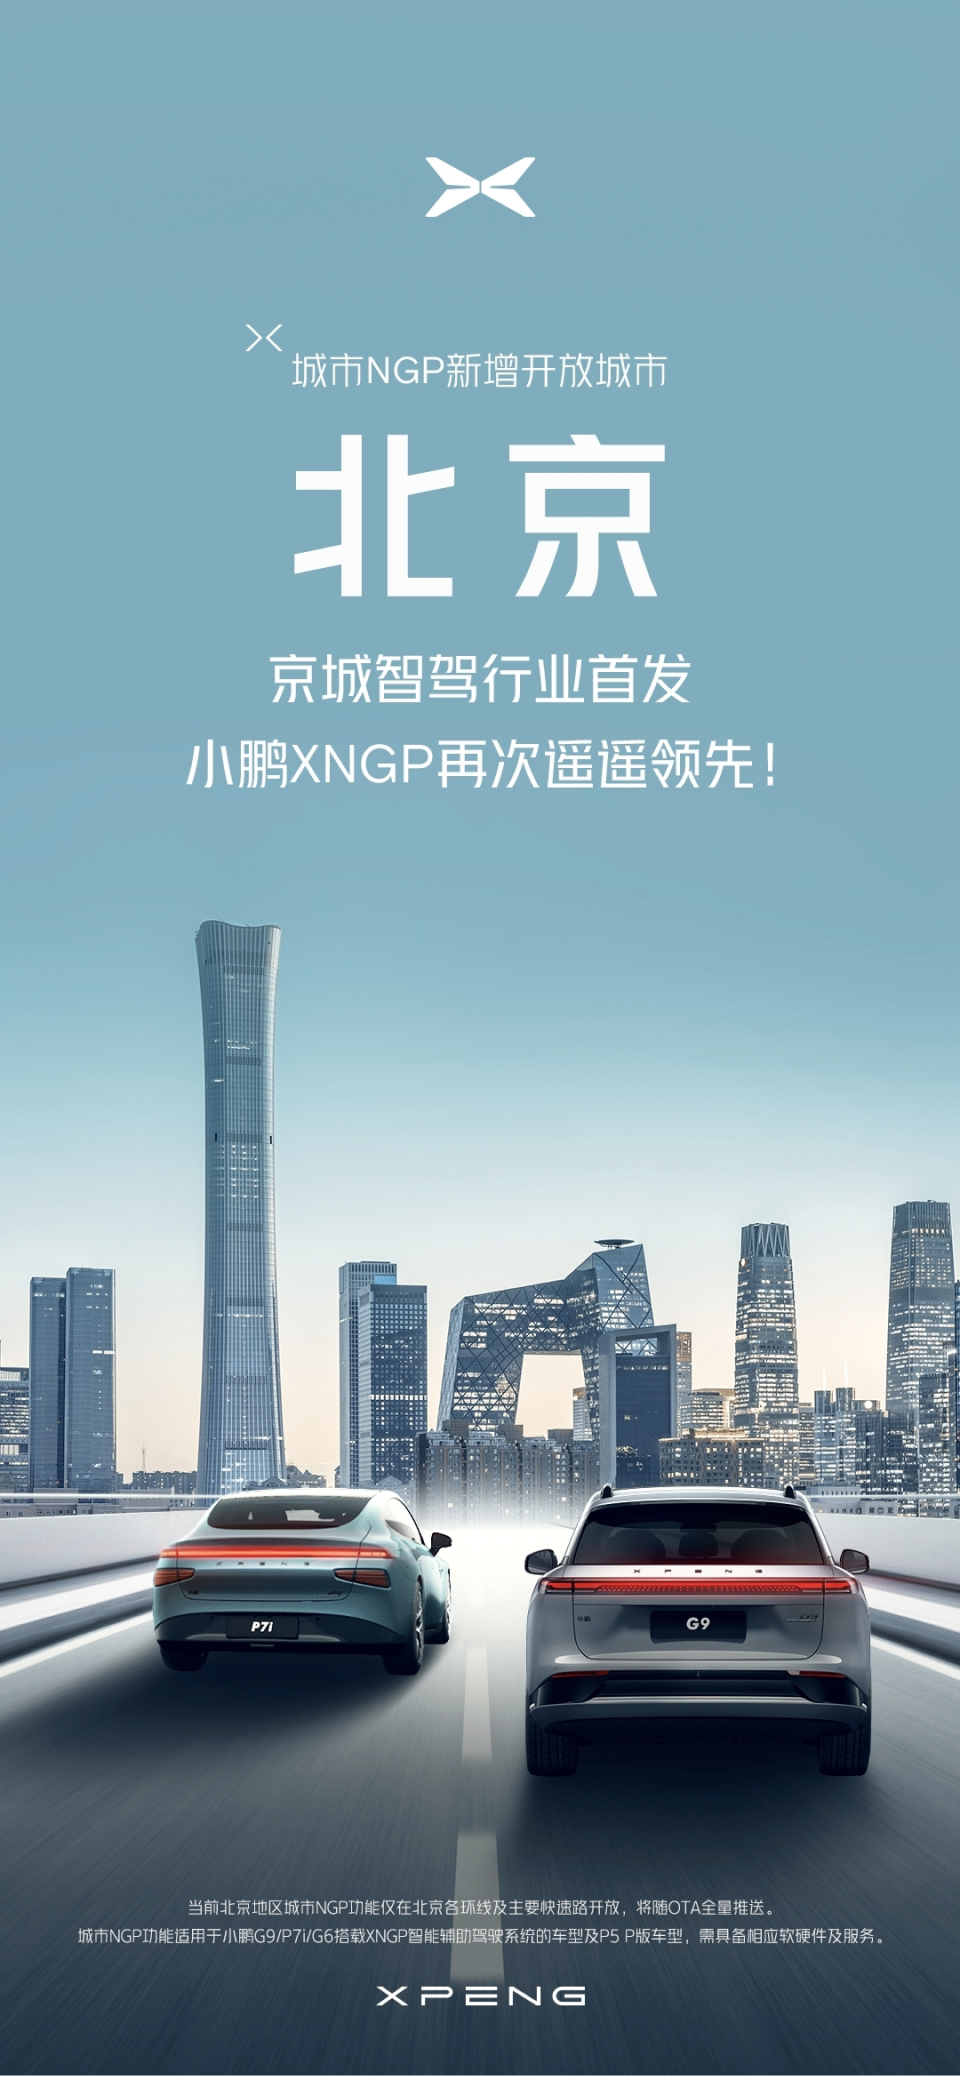 小鹏城市NGP开放北京 北京首次迎来城区高阶智驾